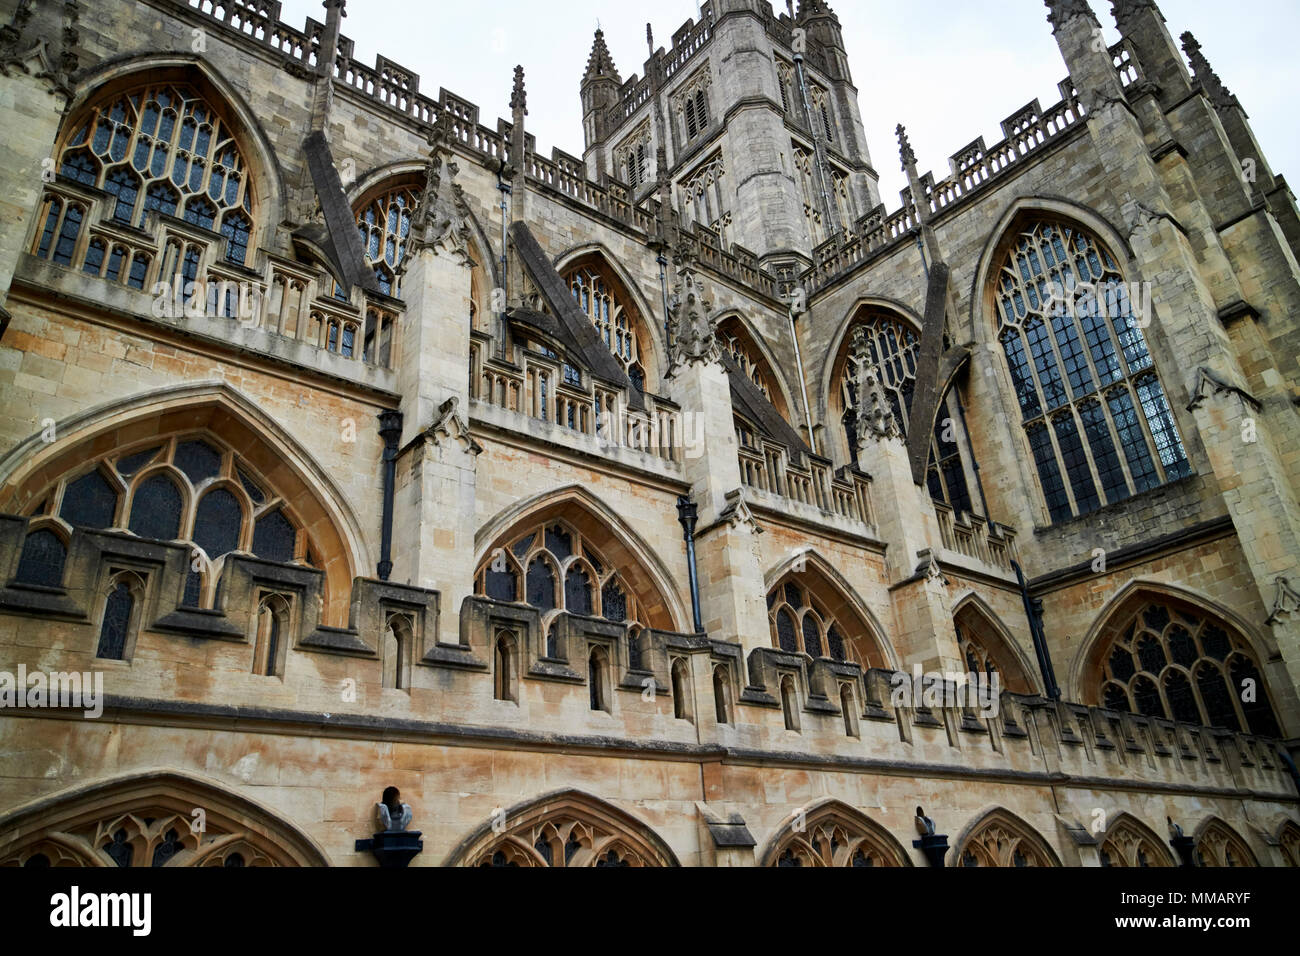 Seitenansicht zu Strebebögen, Zinnen, Zinnen und Brüstungen der gotischen Abtei von Bath Badewanne England Großbritannien Stockfoto